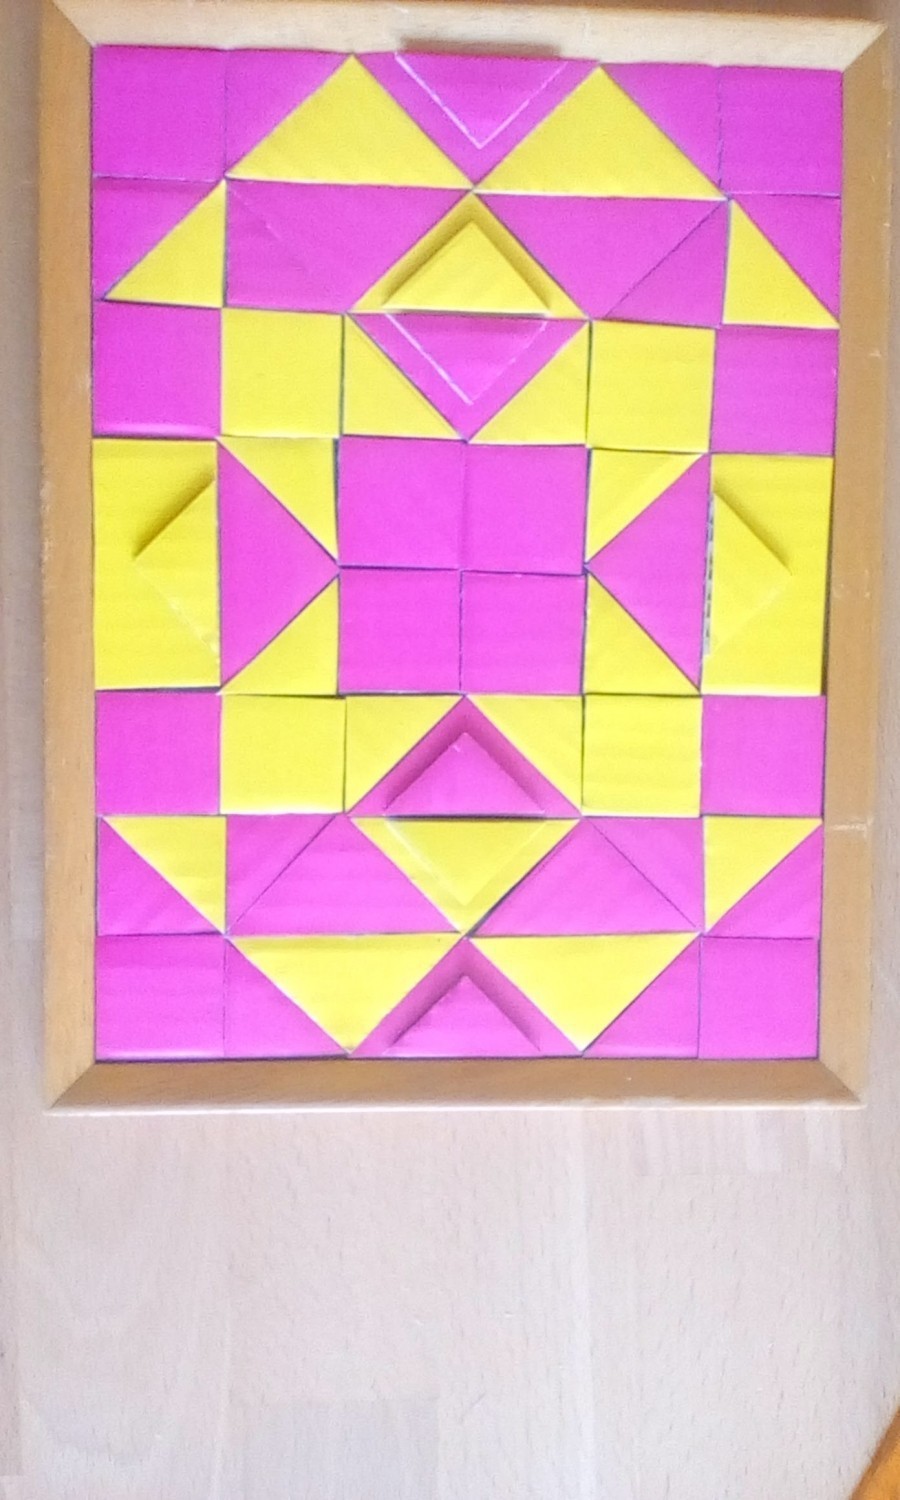 Die Dreiecke entstehen, indem man die Quadrate einfach schräg durchschneidet. Dreiecke kann man auch zusätzlich auf ein paar Quadrate kleben, das gibt einen tollen Effekt.